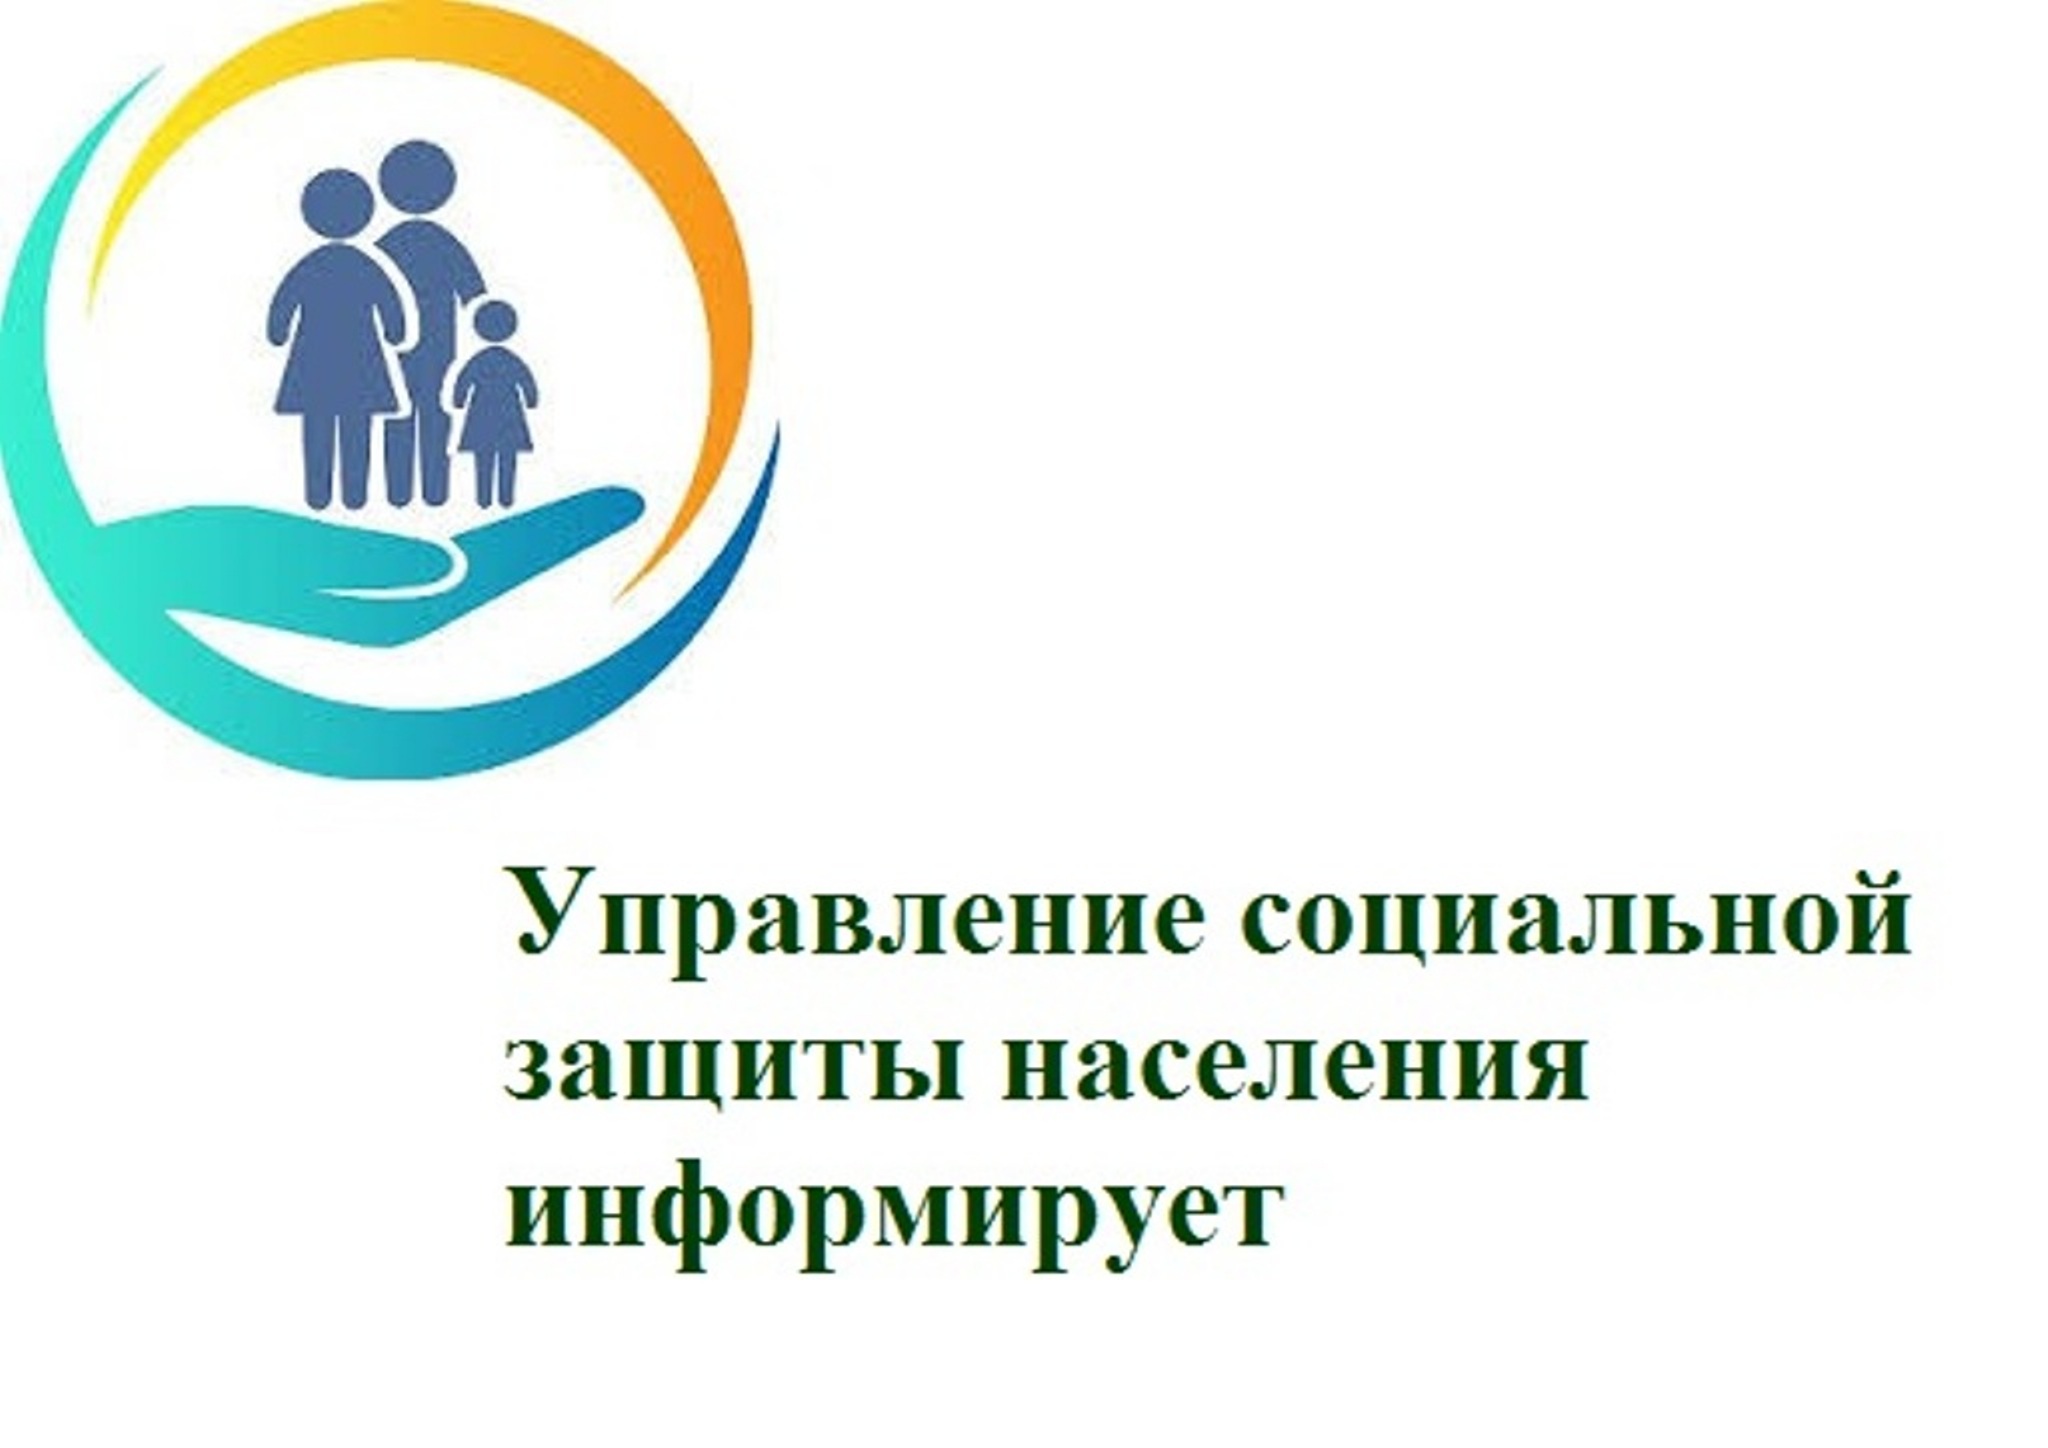 ОГКУ «Управление социальной защиты населения по Качугскому району» информирует граждан (пенсионеров, получающих региональную социальную доплату к пенсии